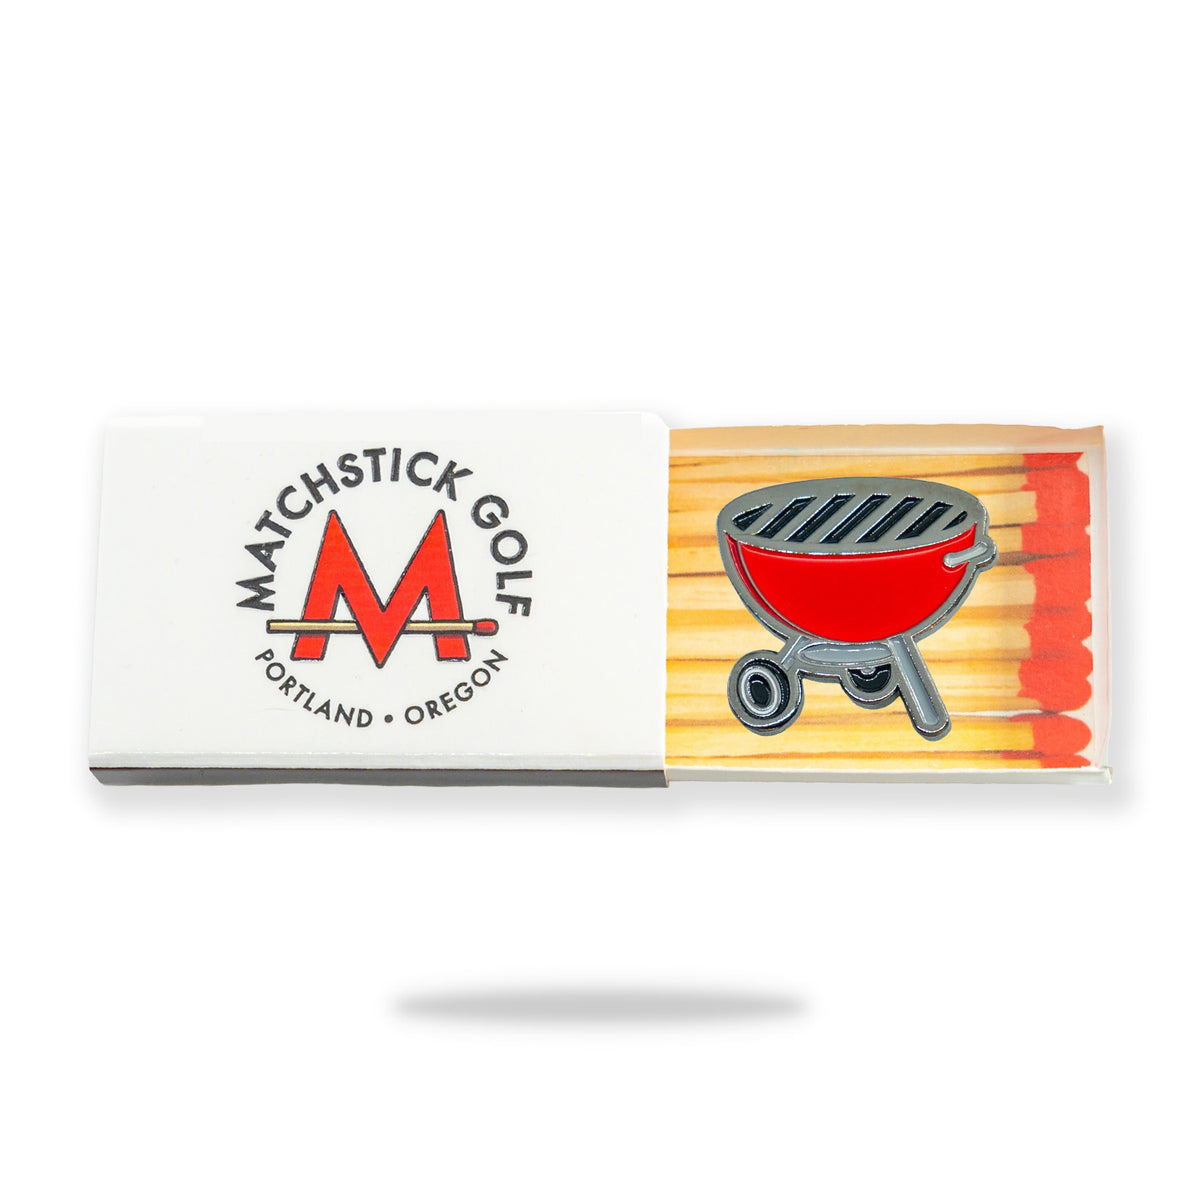 bbq grill weber red golf ball marker matchstick matchbox packaging